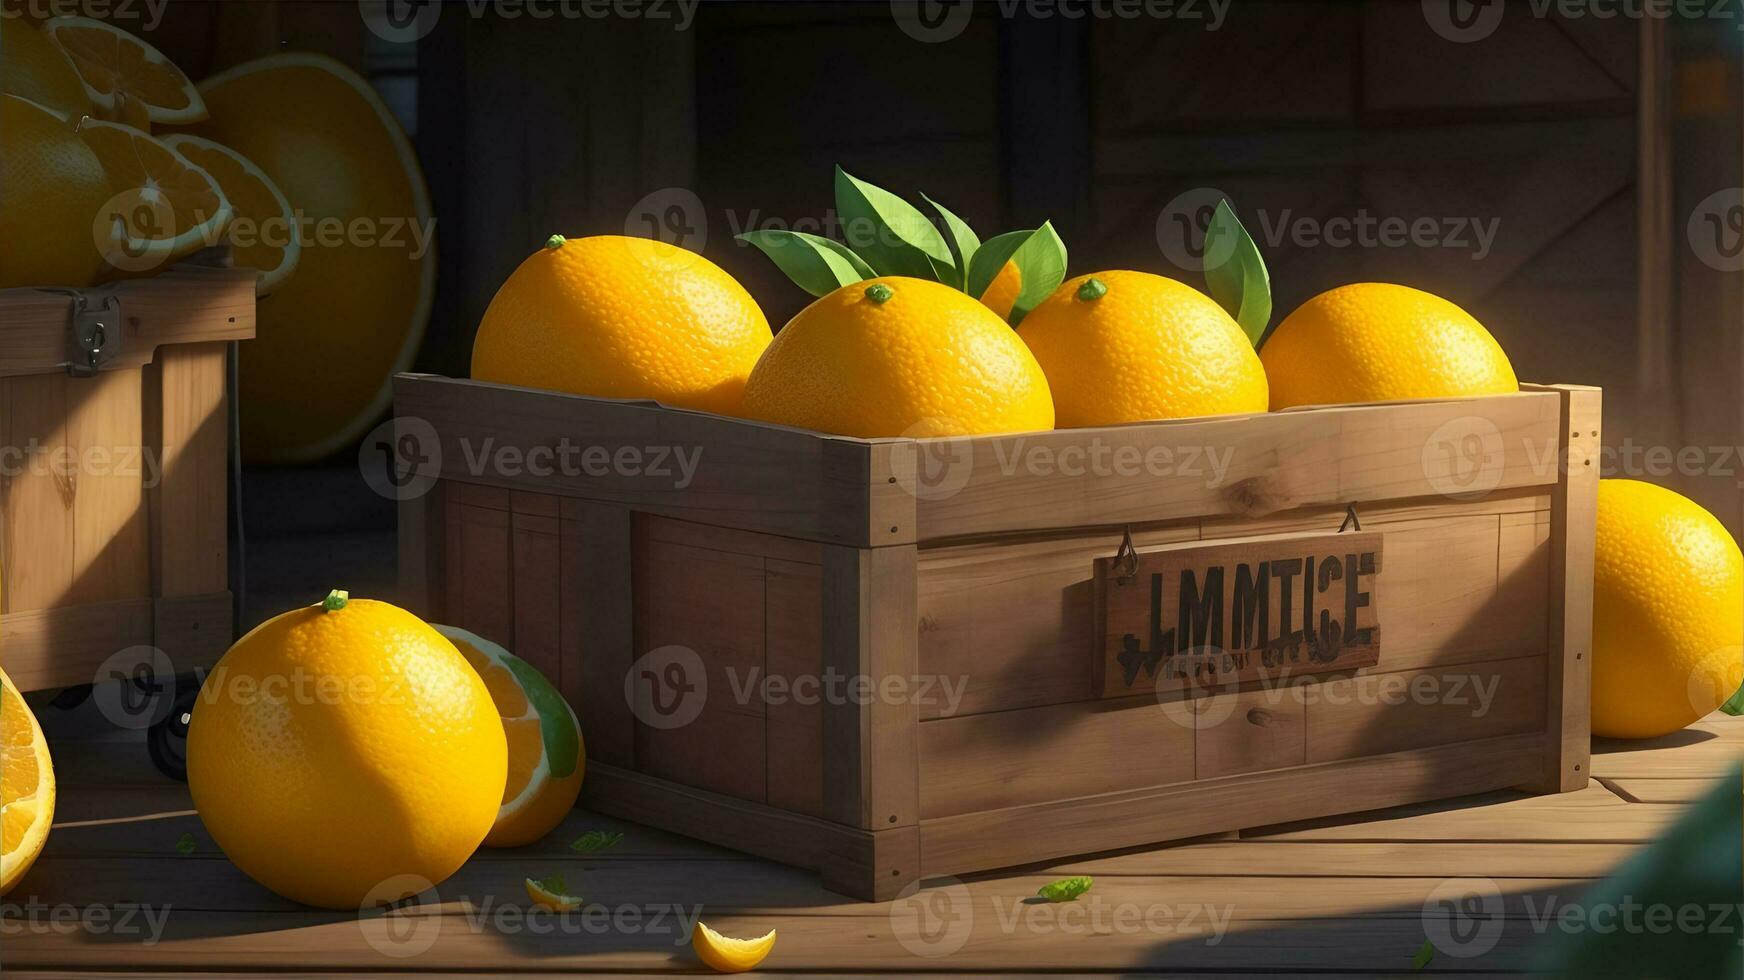 sappig citrus fruit in een rustiek krat. ai gegenereerd foto